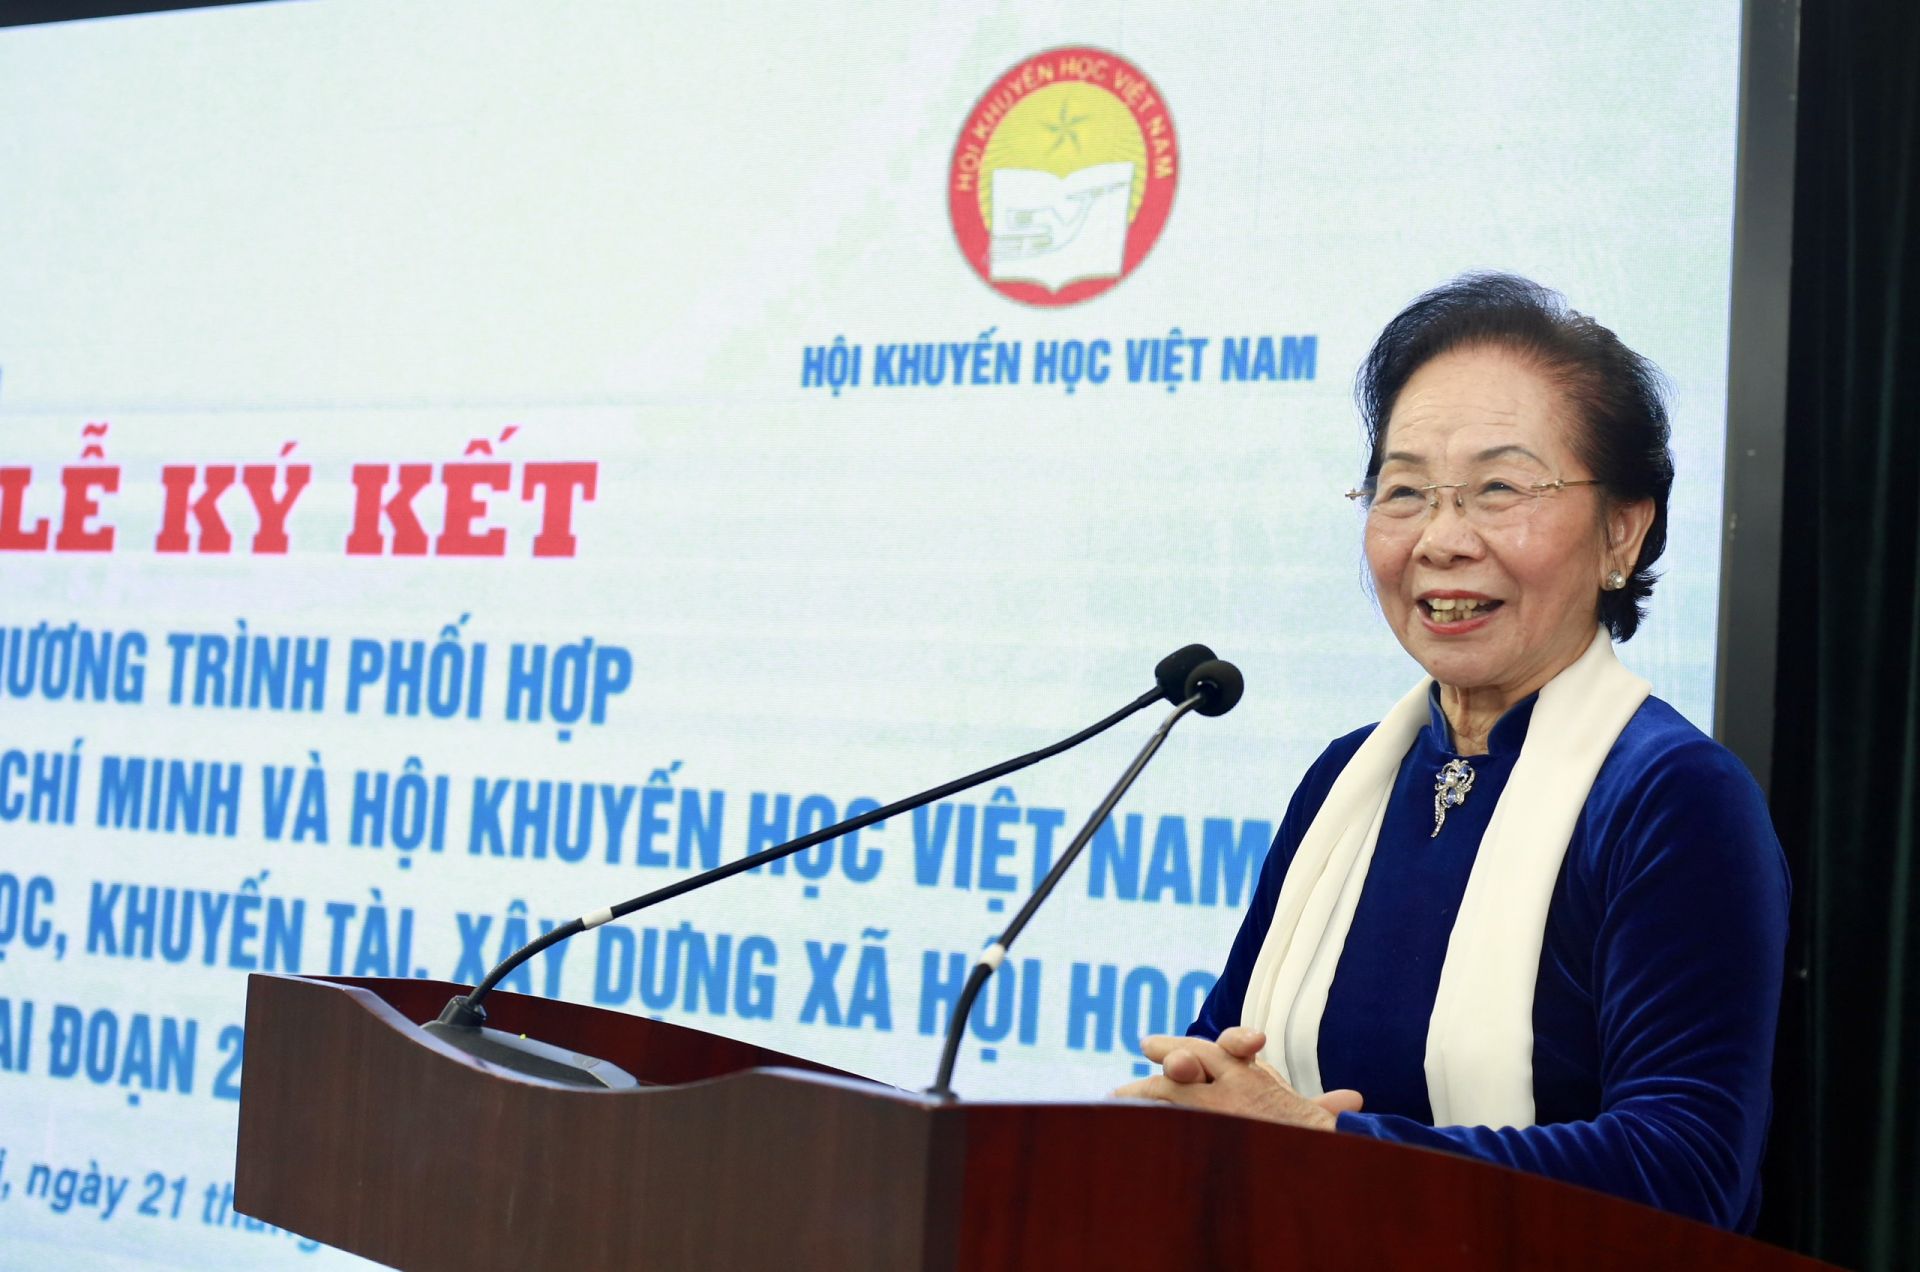 Bác Nguyễn Thị Doan phát biểu tại buổi lễ.